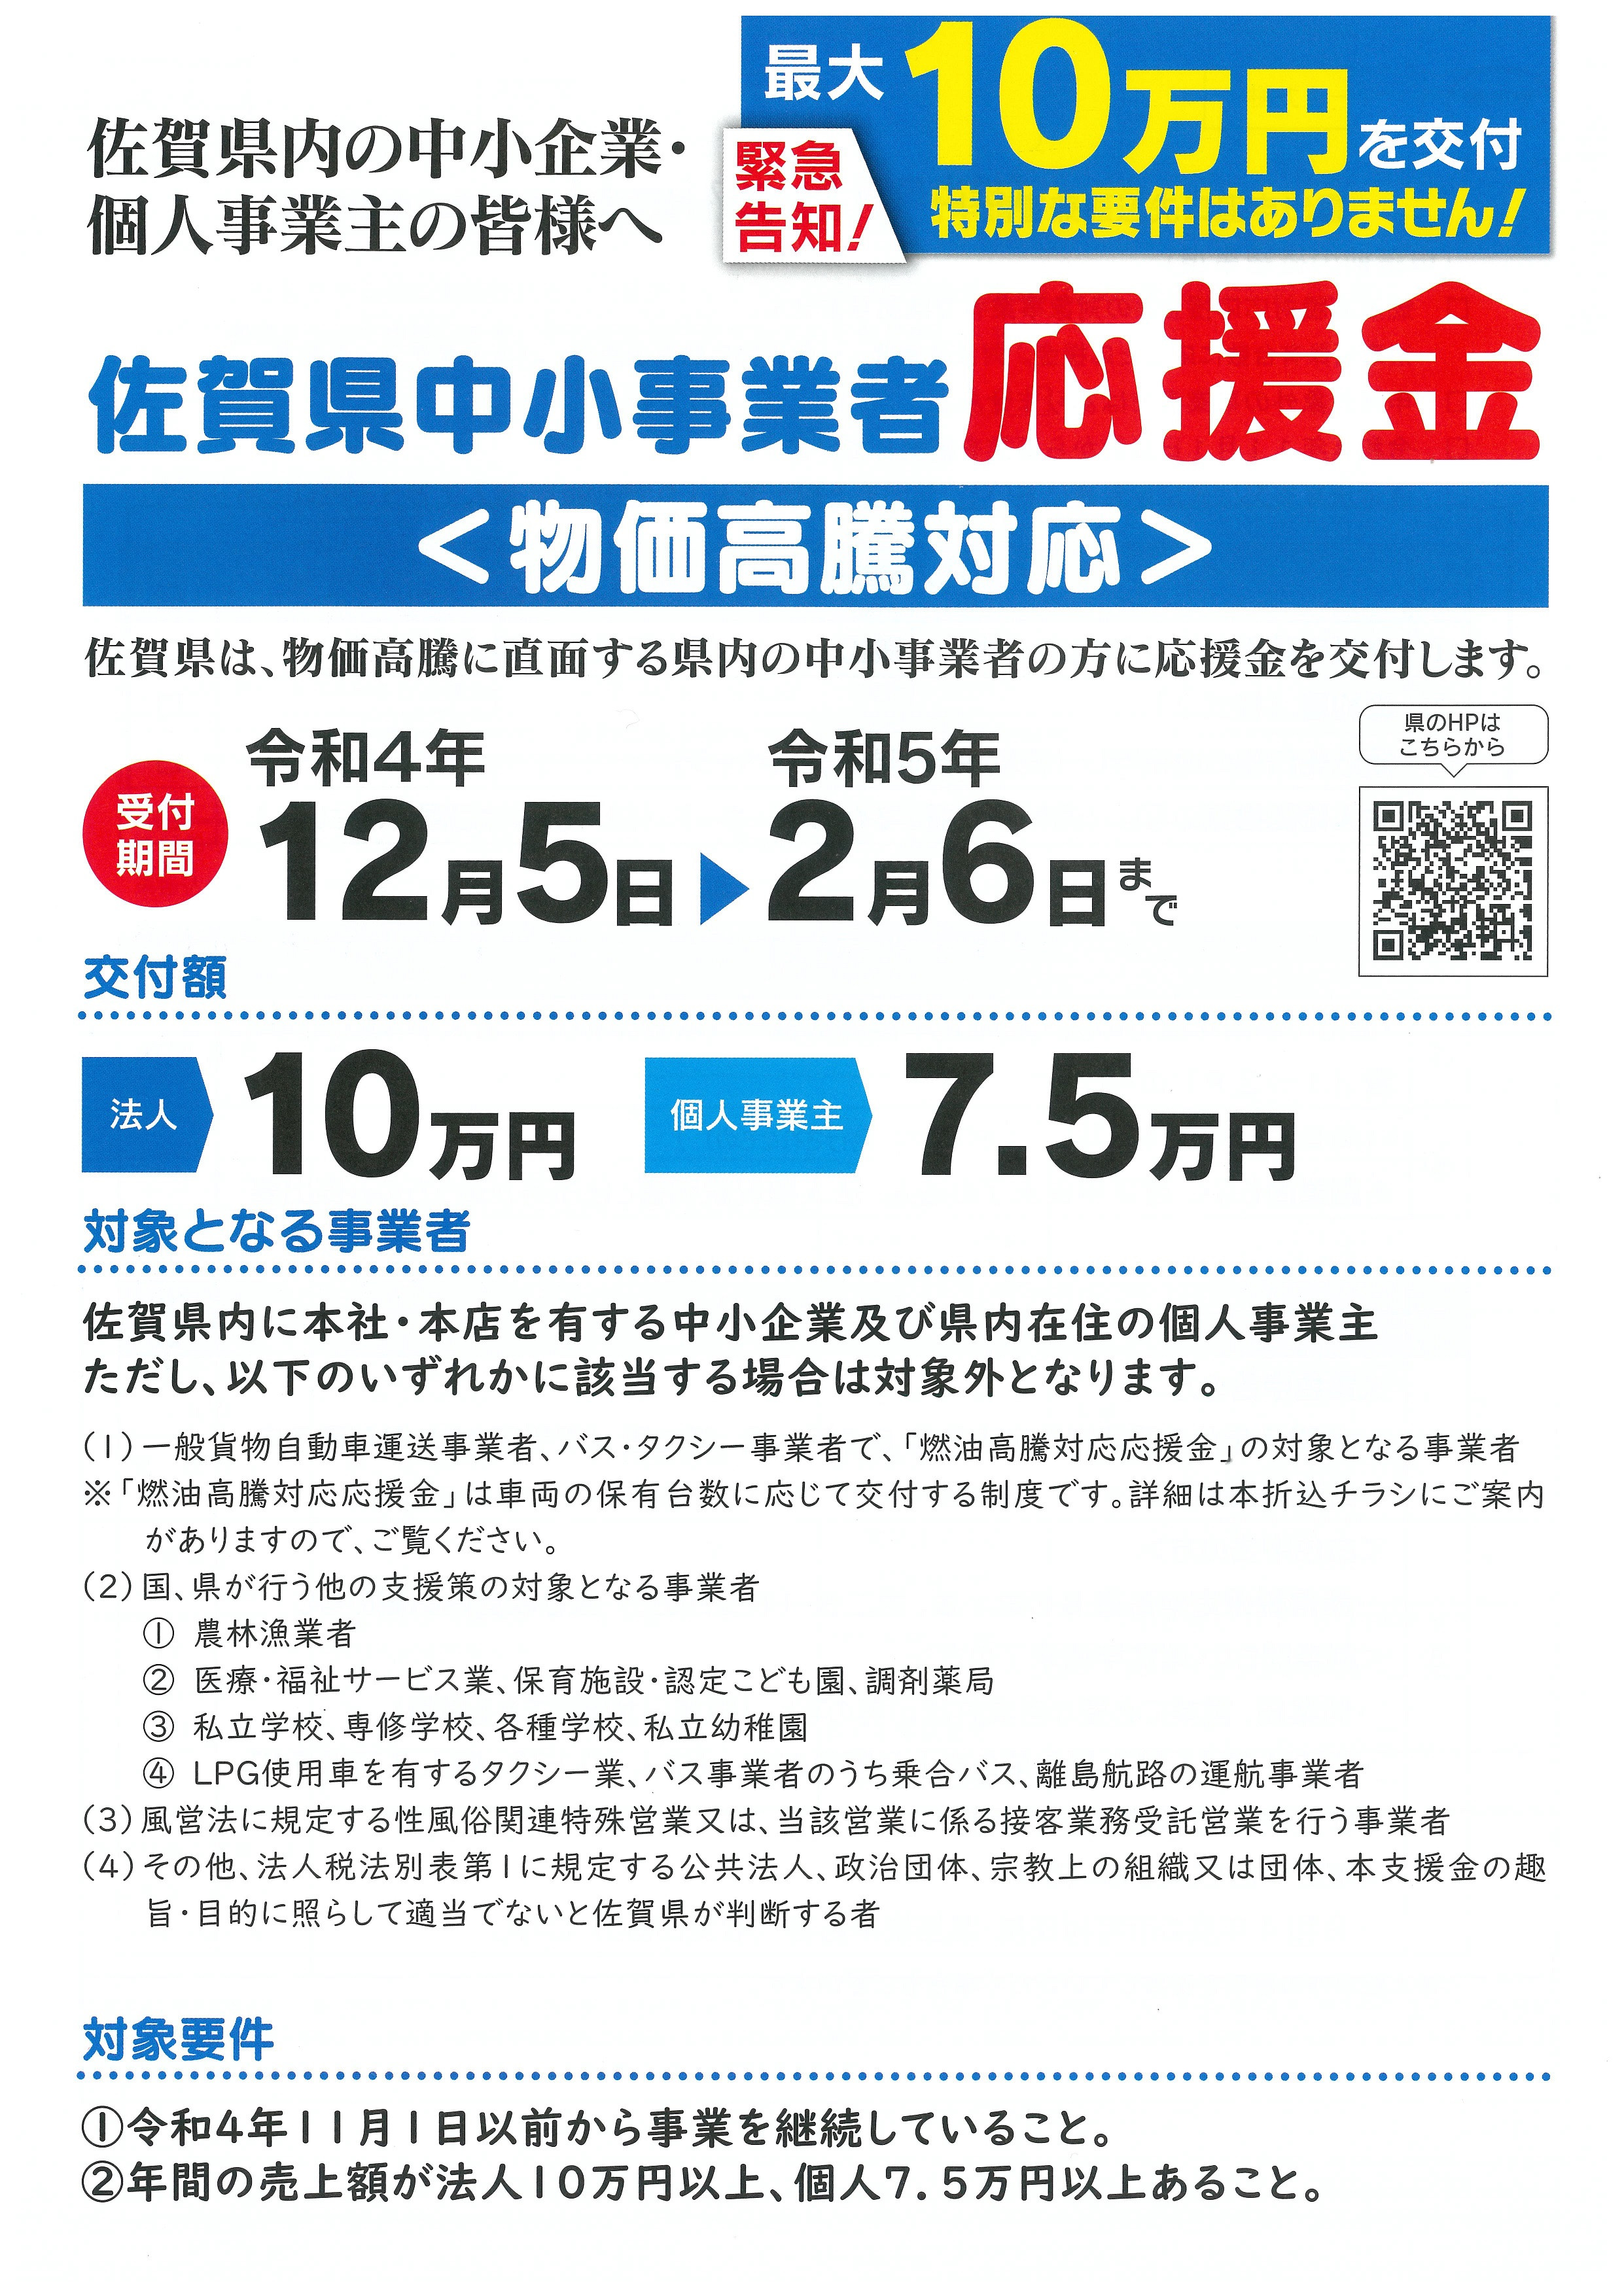 佐賀県中小事業者物価高騰対応応援金の申請受付に関するお知らせ